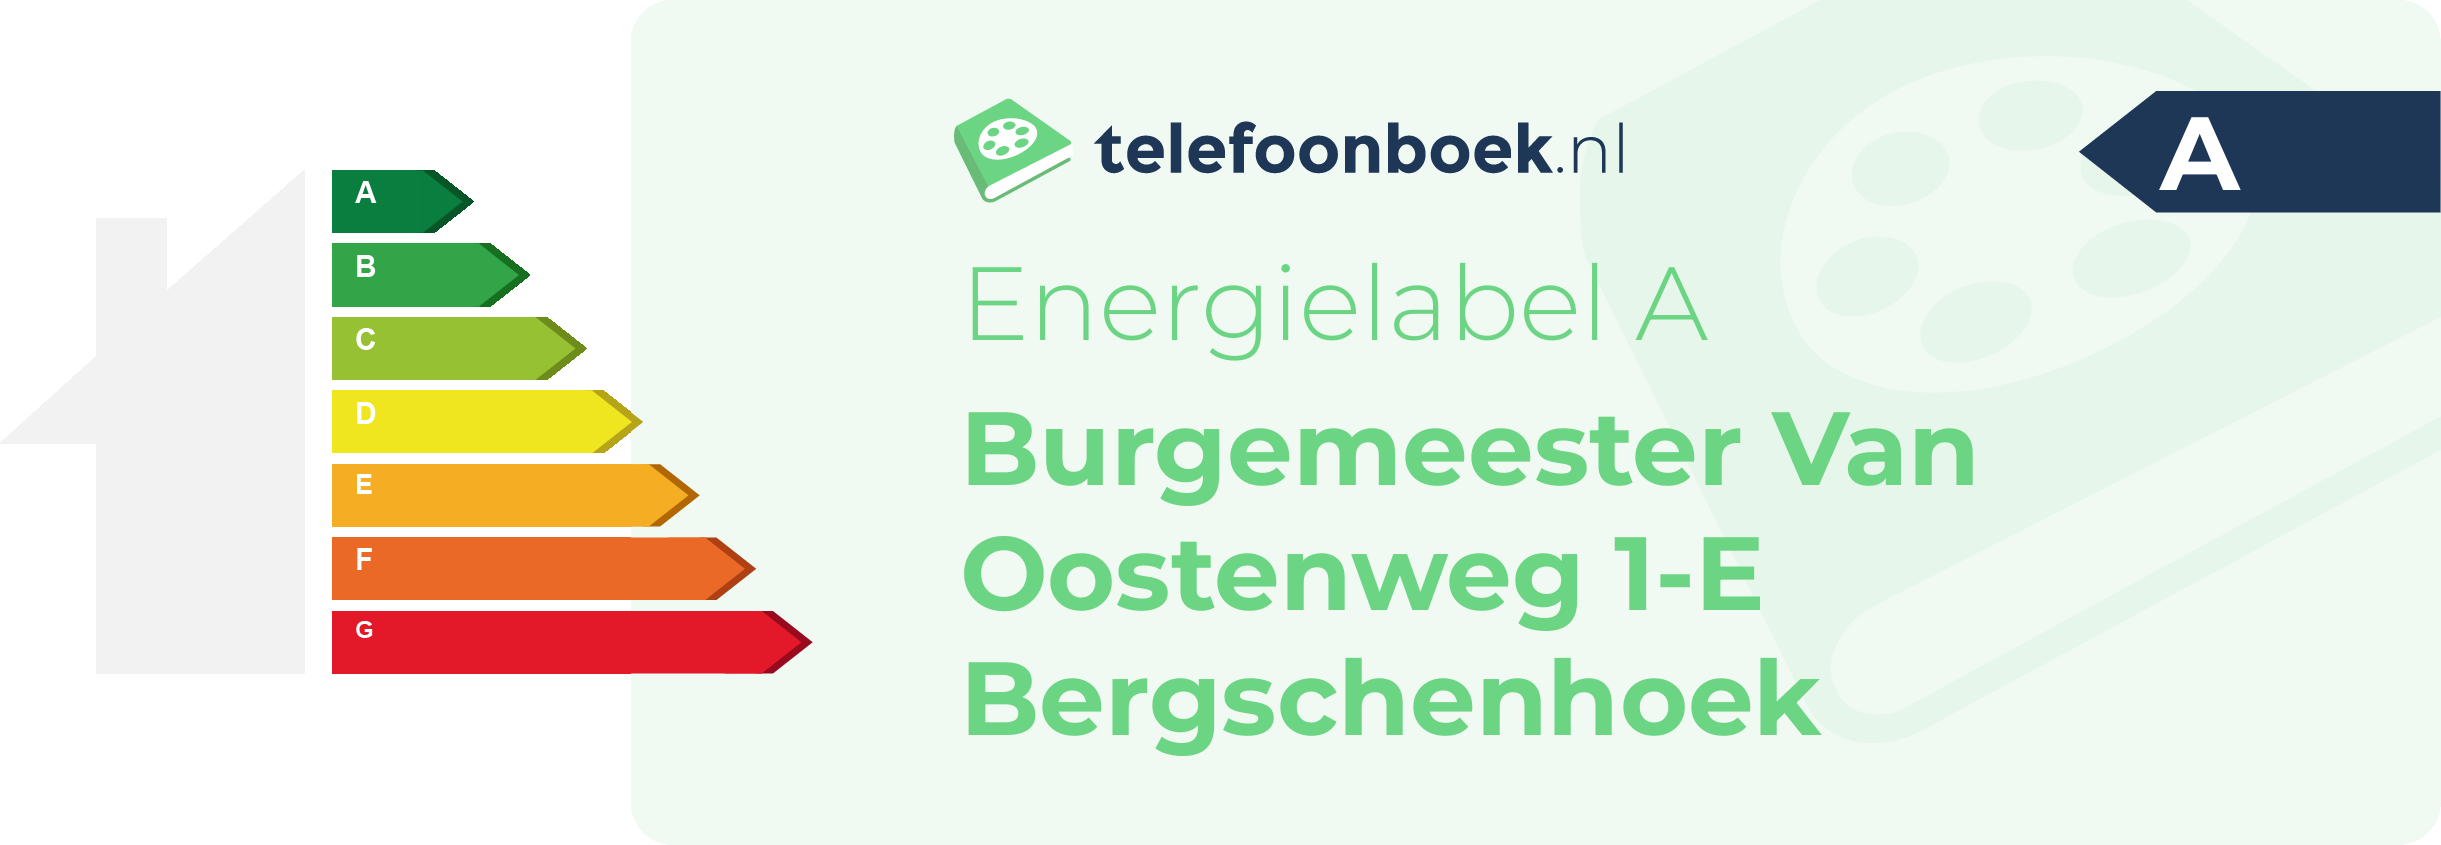 Energielabel Burgemeester Van Oostenweg 1-E Bergschenhoek